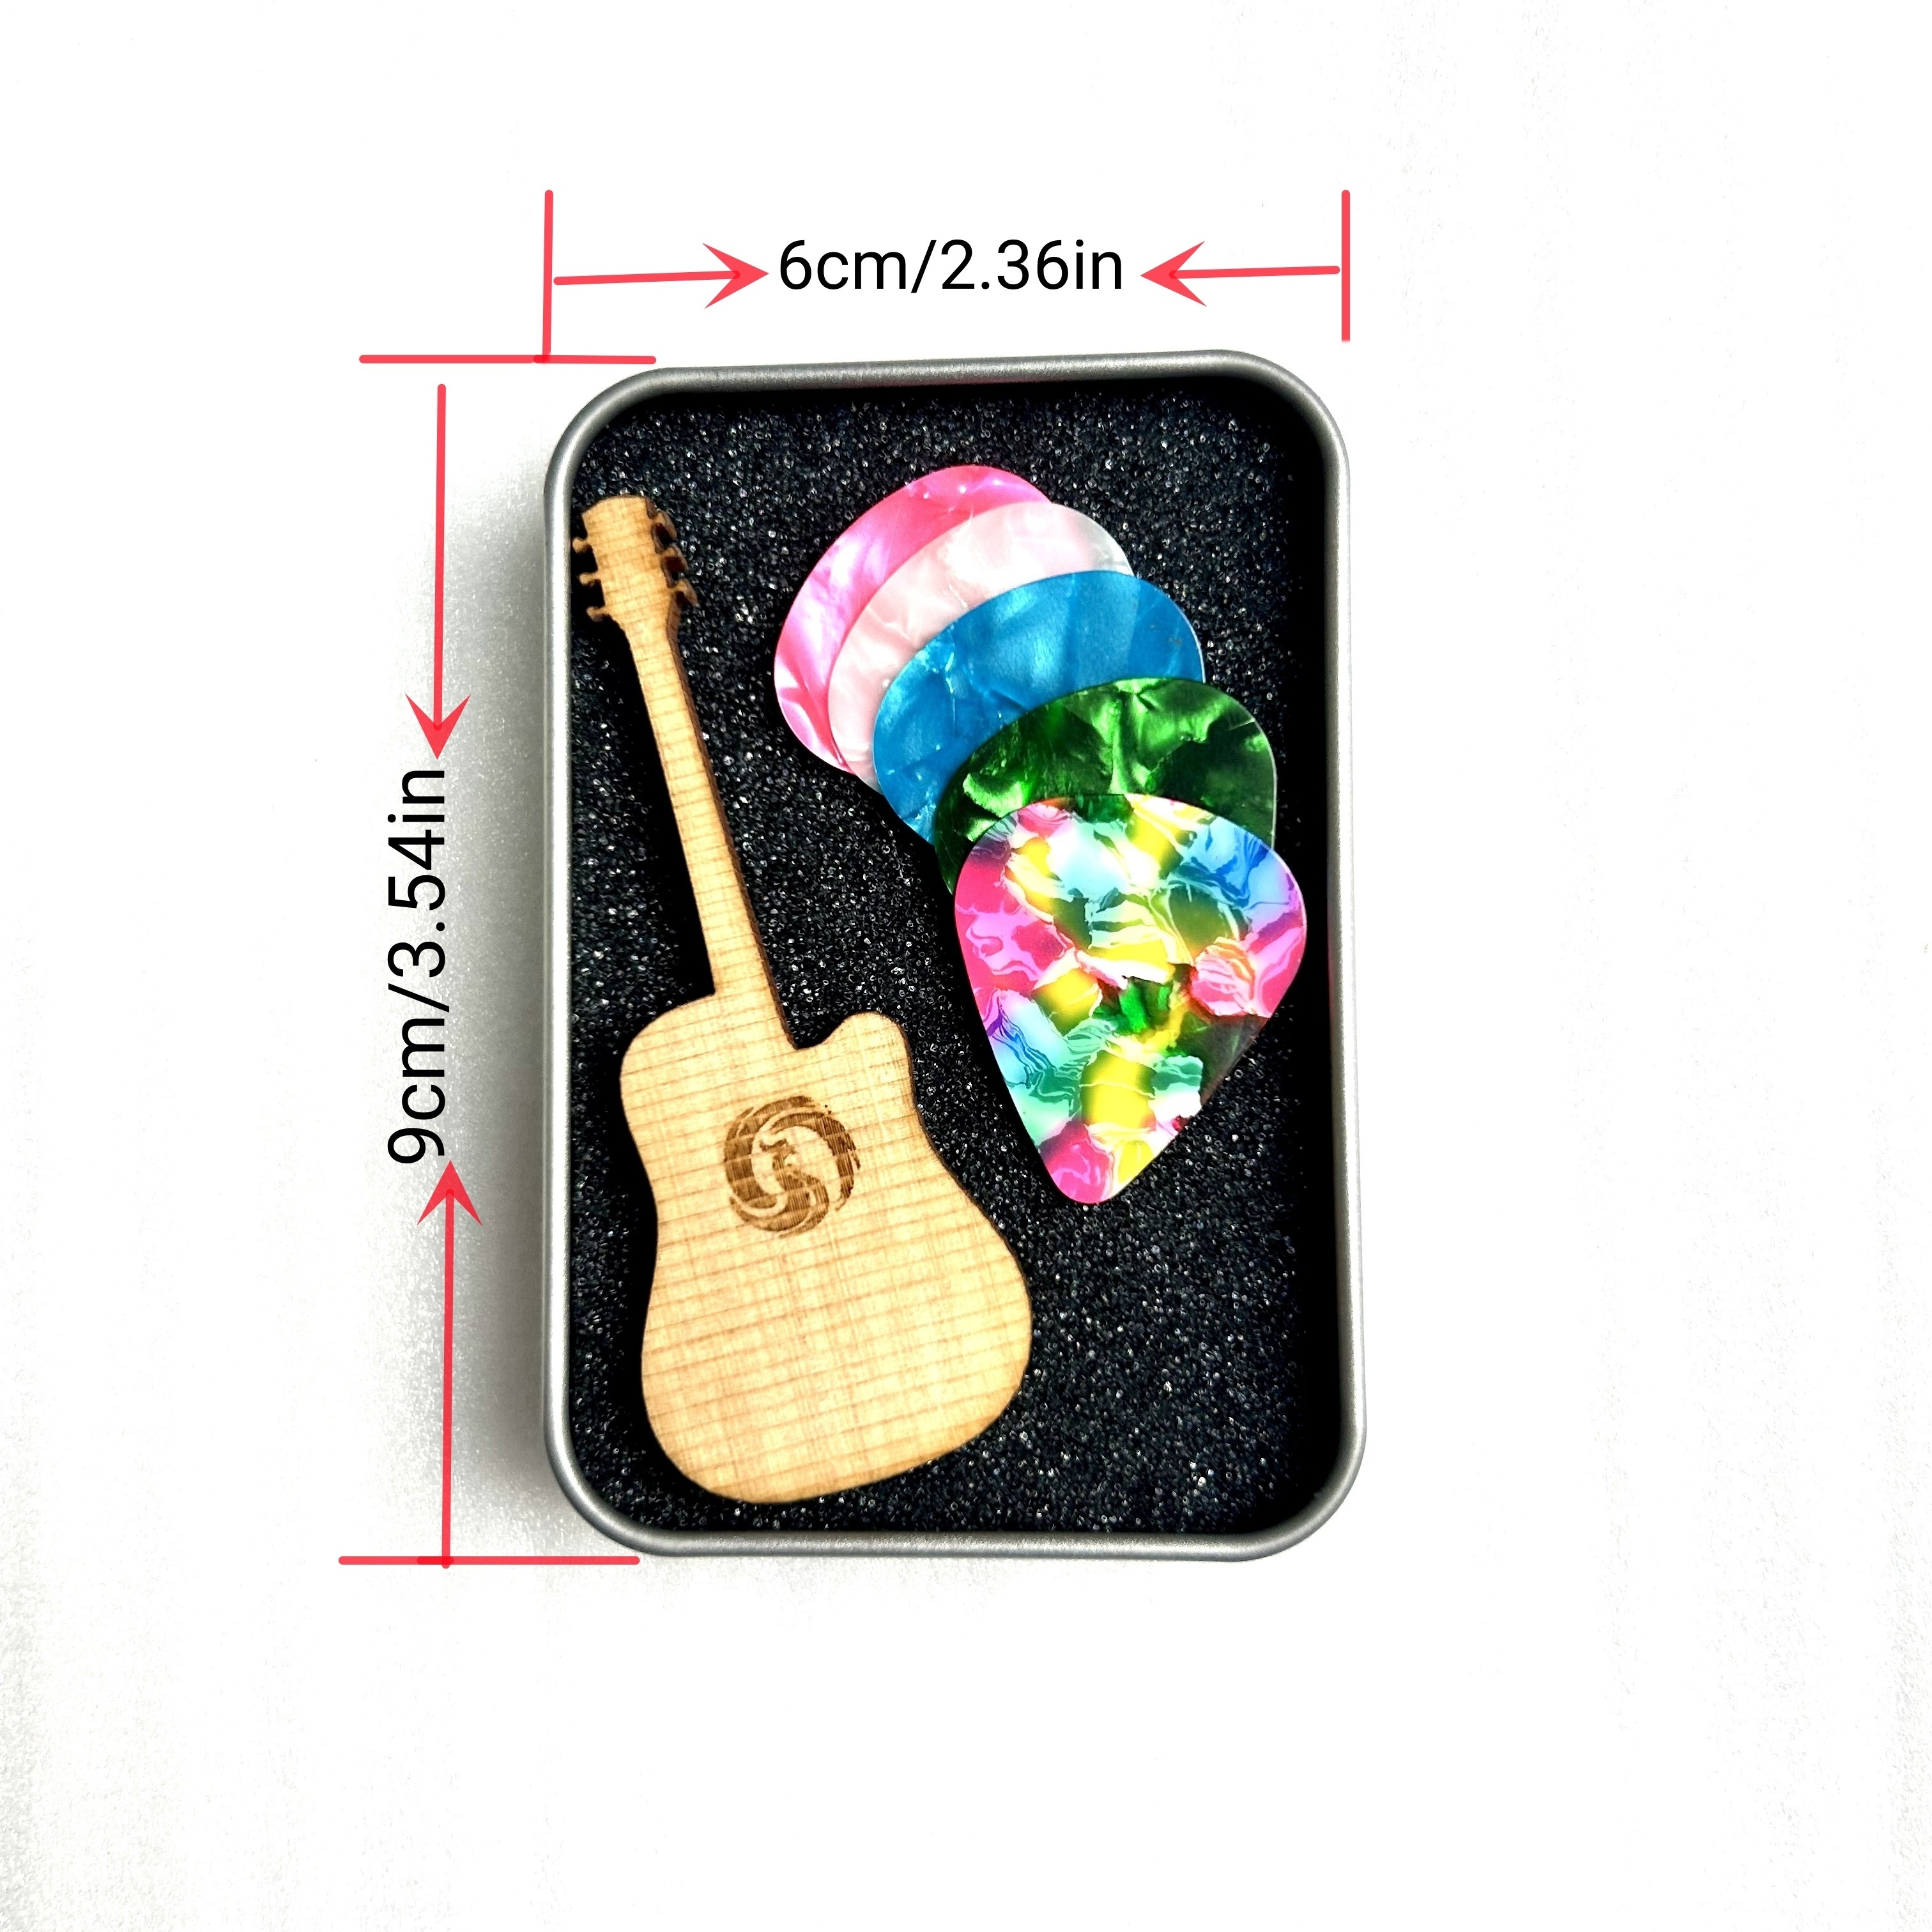 Frotox Étui de médiator en Forme de Guitare Boîte de Basse pour Guitare  Instrument de Musique Porte-médiator de Guitare… : acheter des objets  Beatles, Lennon, McCartney, Starr et Harrison